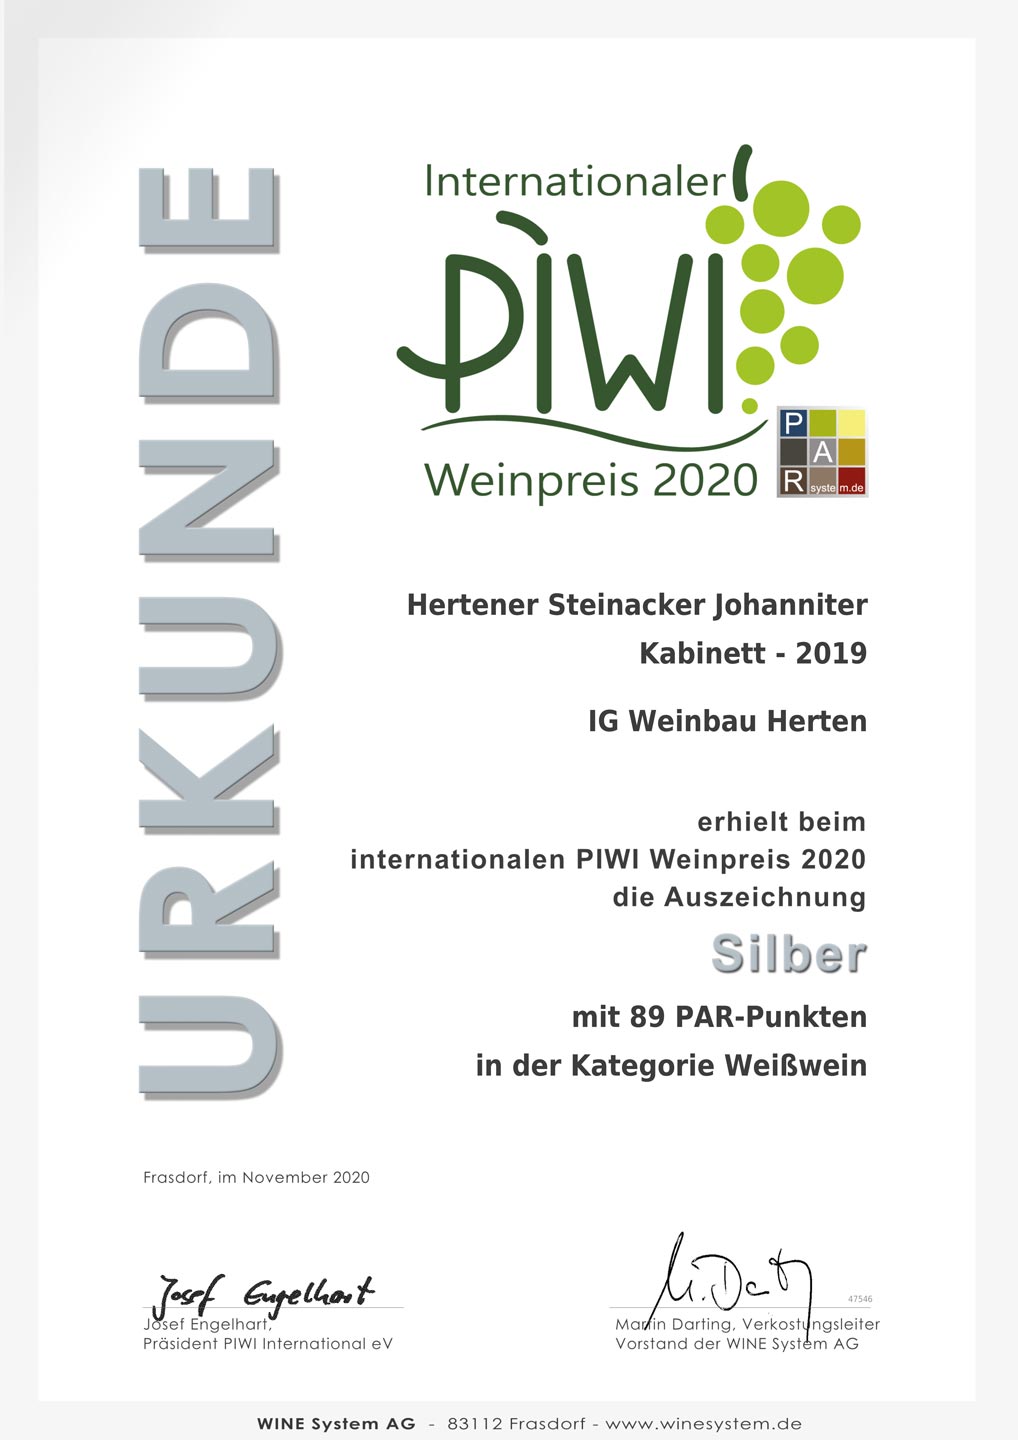 Silber beim internationalen PIWI Weinpreis 2020 für Hertener Steinacker Johanniter Kabinett 2019